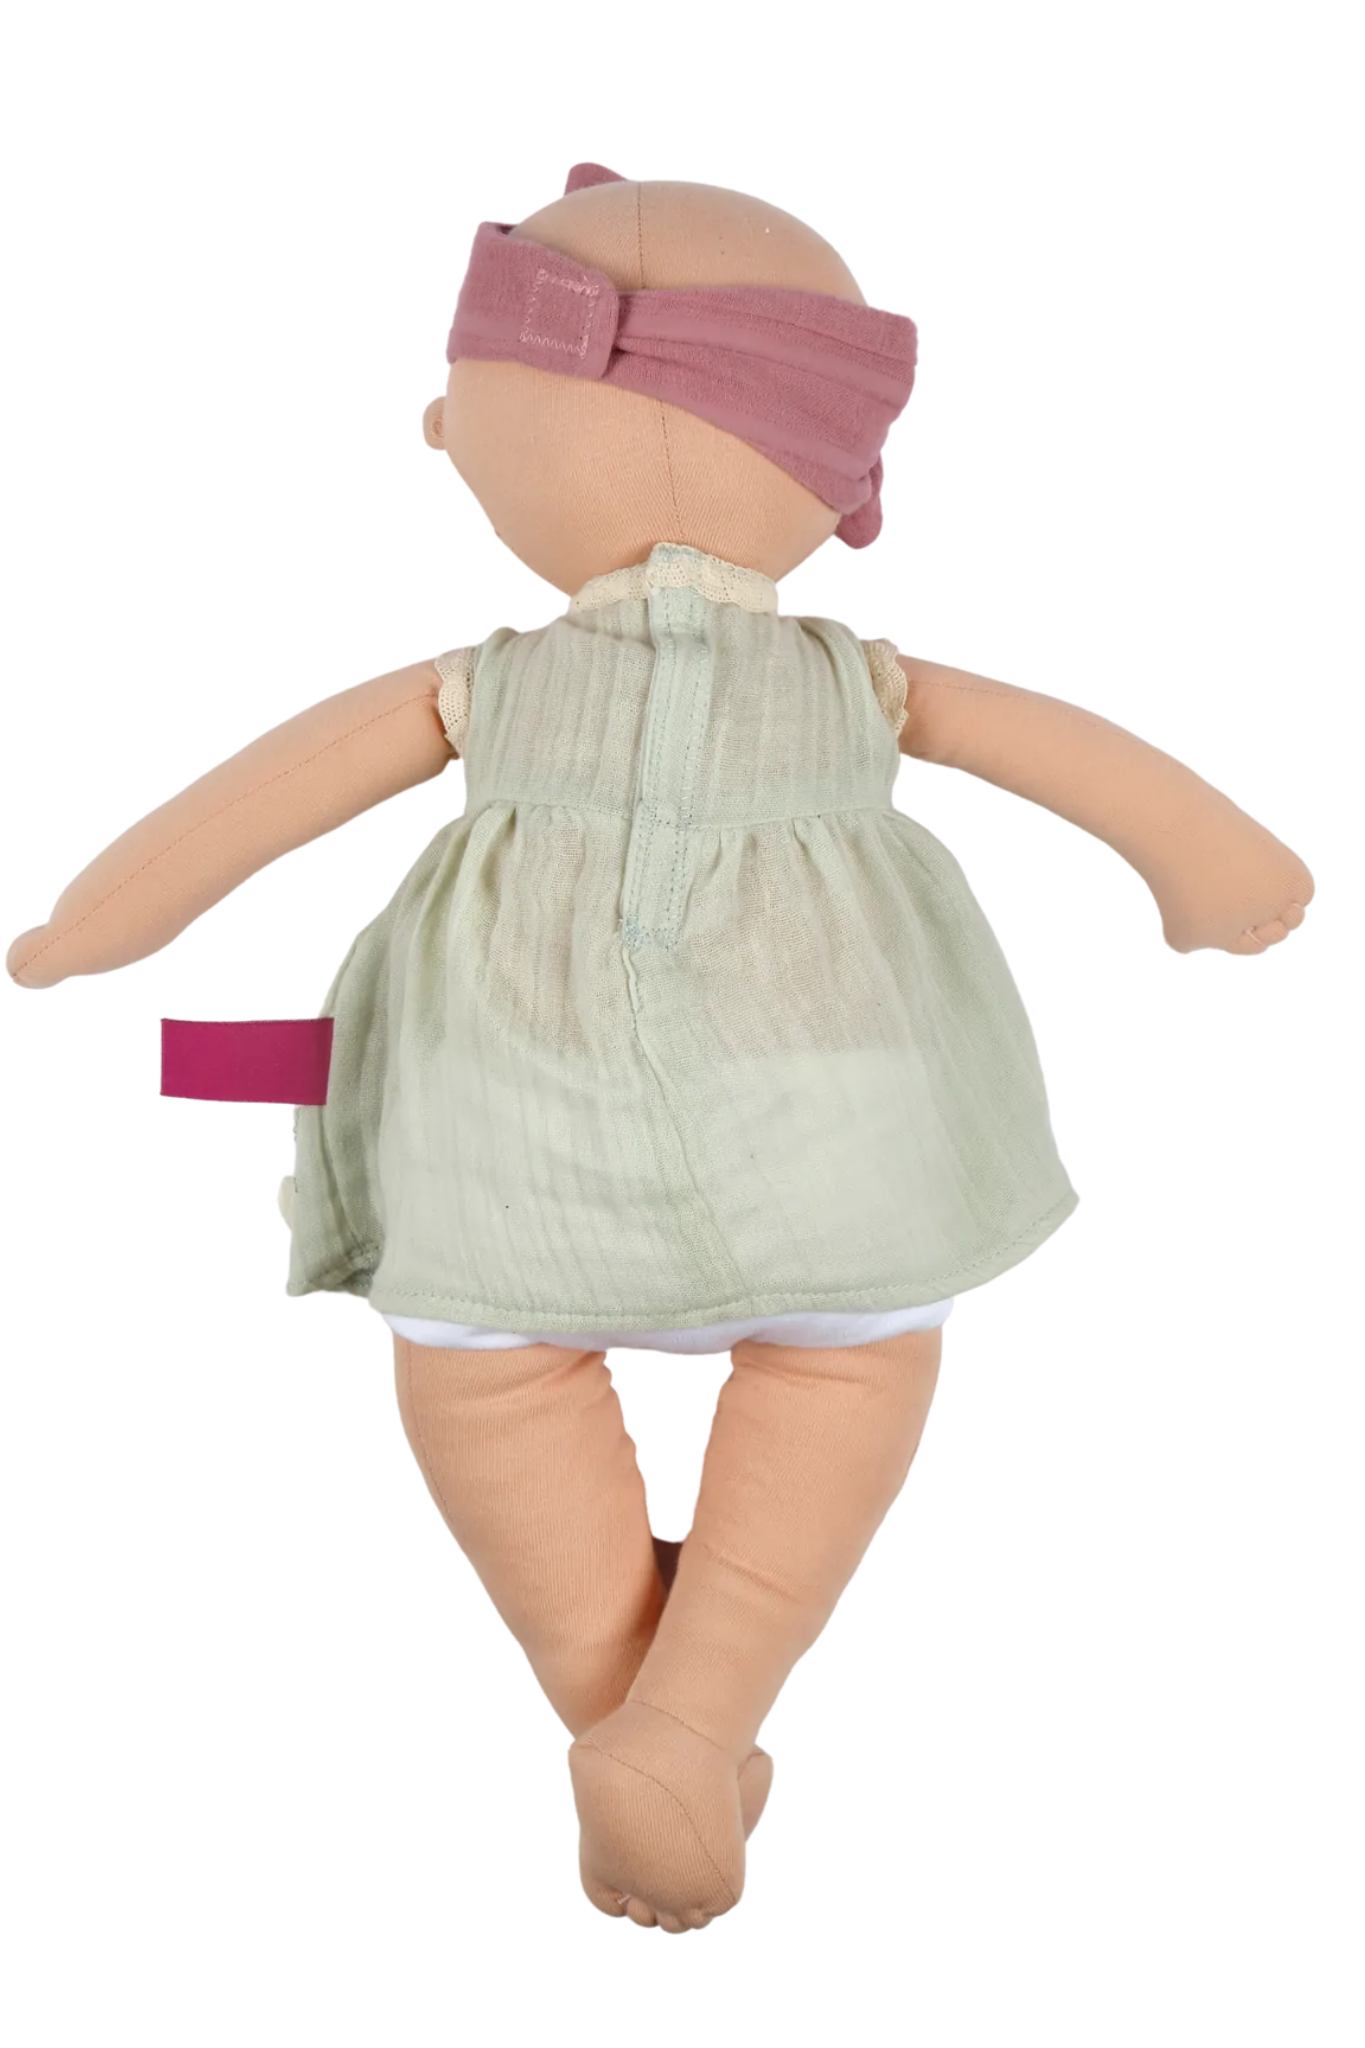 Tikiri Toys Organic Baby Kaia Doll